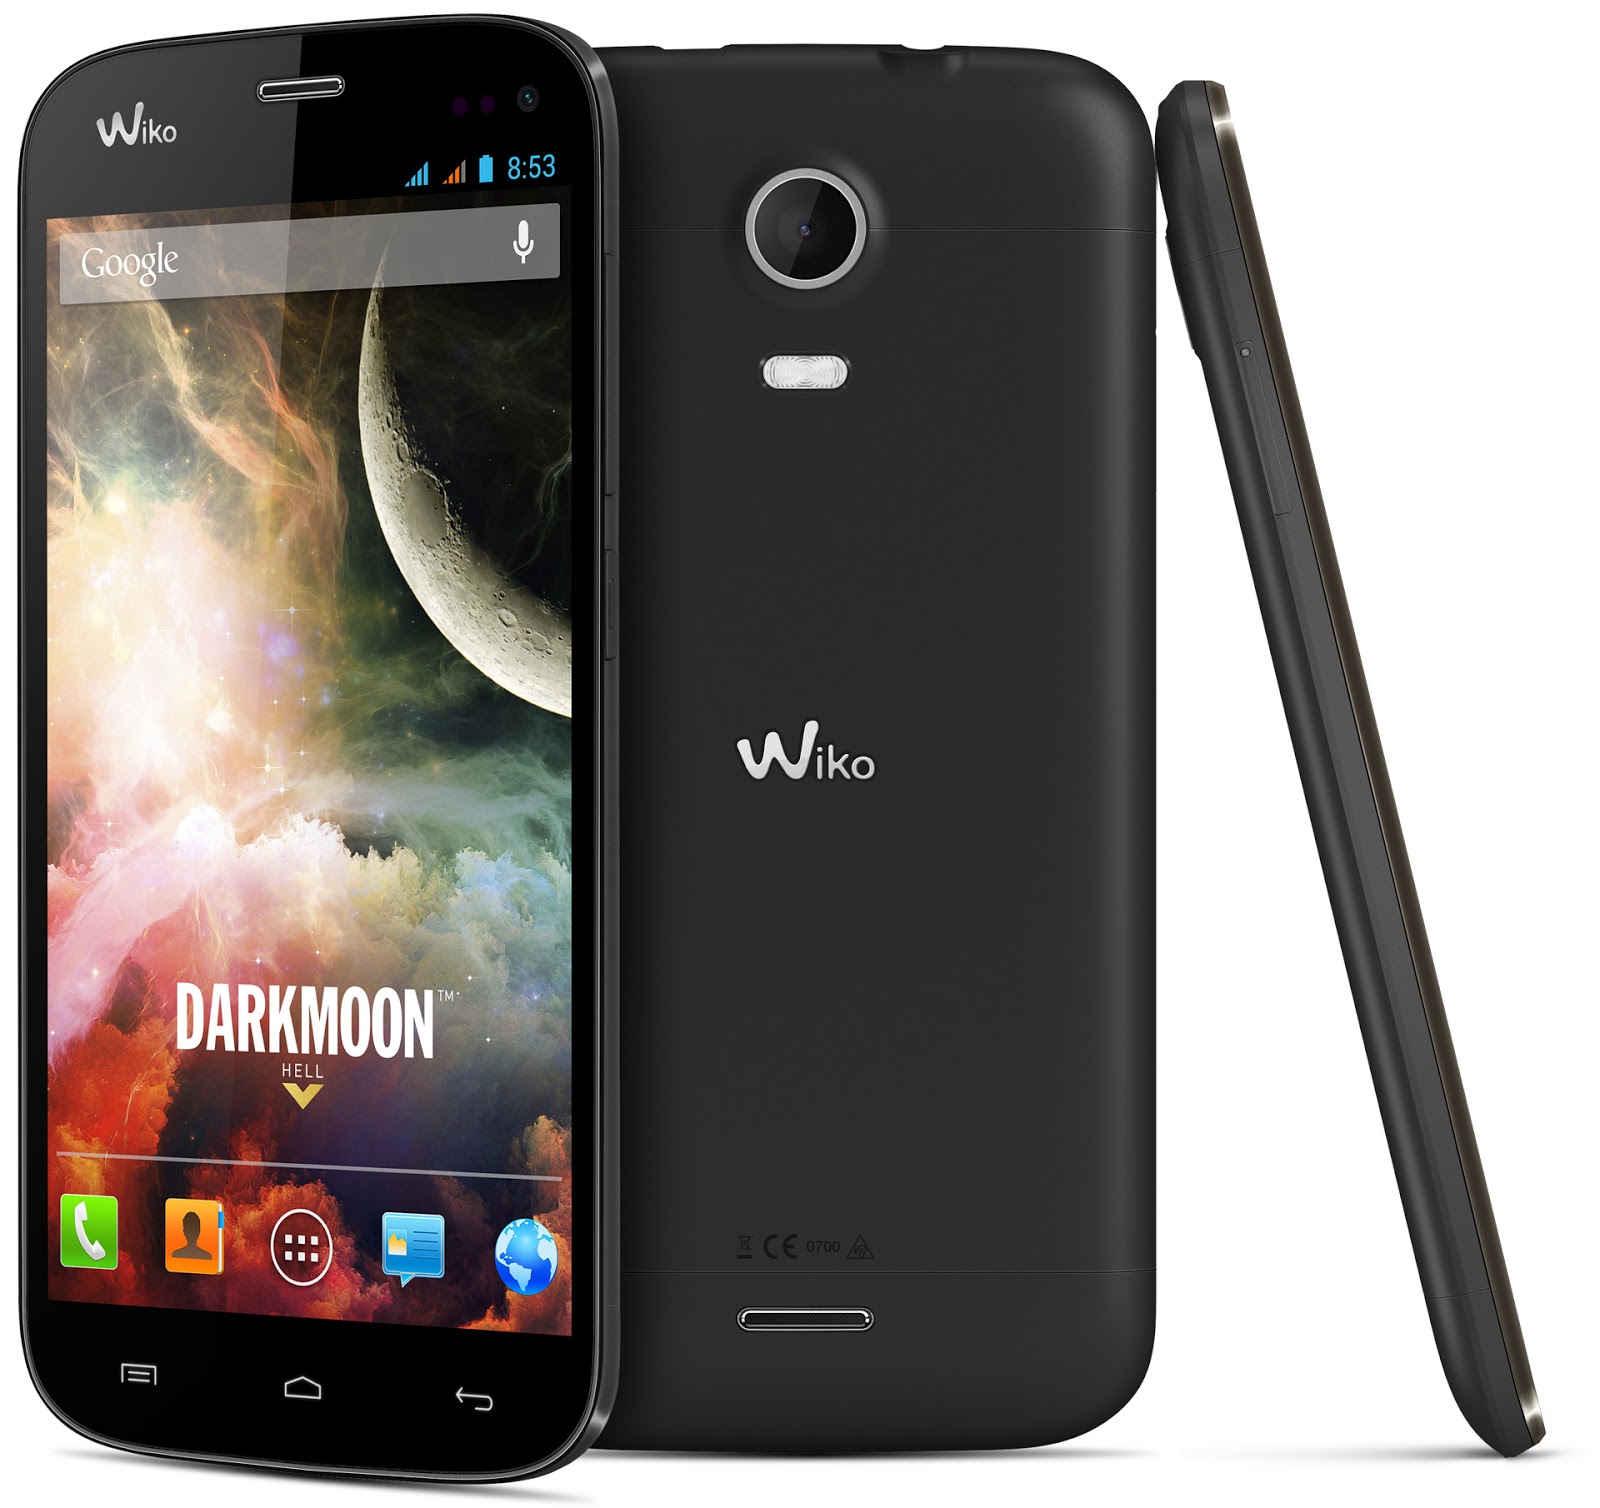 Телефон гугл отзывы. Wiko. Дисплей для Wiko darknight. Darkmoon. Wiko смартфон с надписью в левом углу.